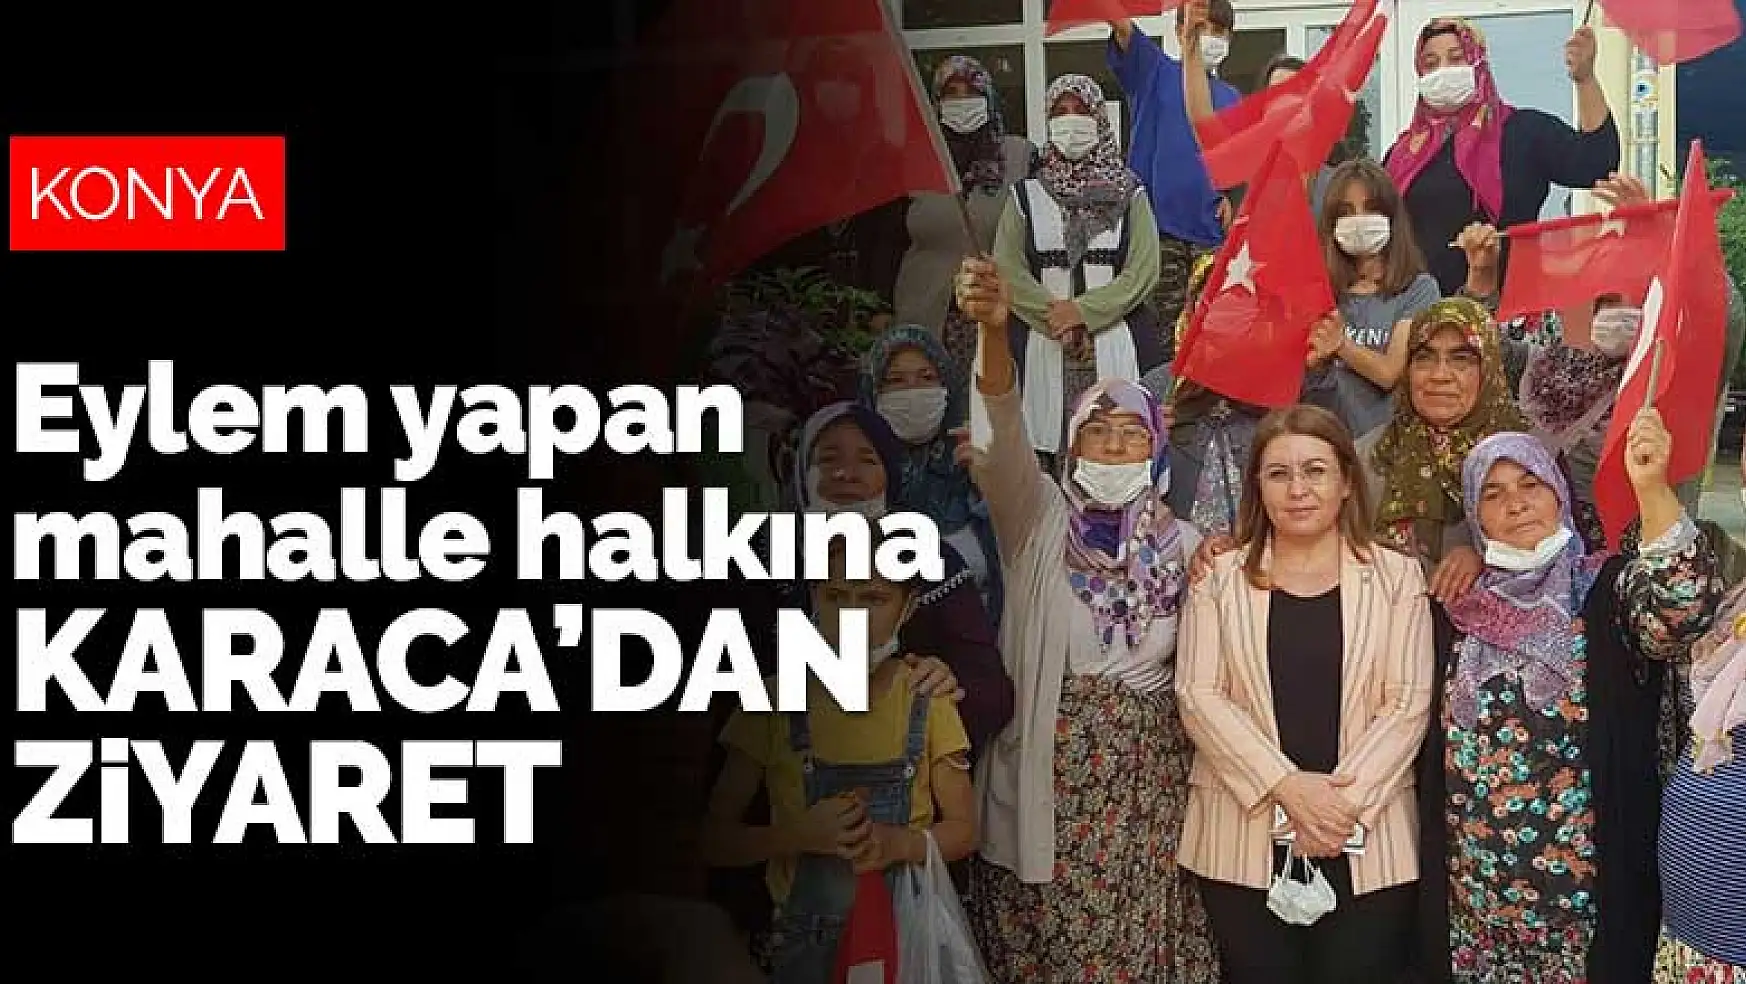 Konya'da eylem yapan mahalle halkına CHP Genel Başkan Yardımcısı Karaca'dan ziyaret